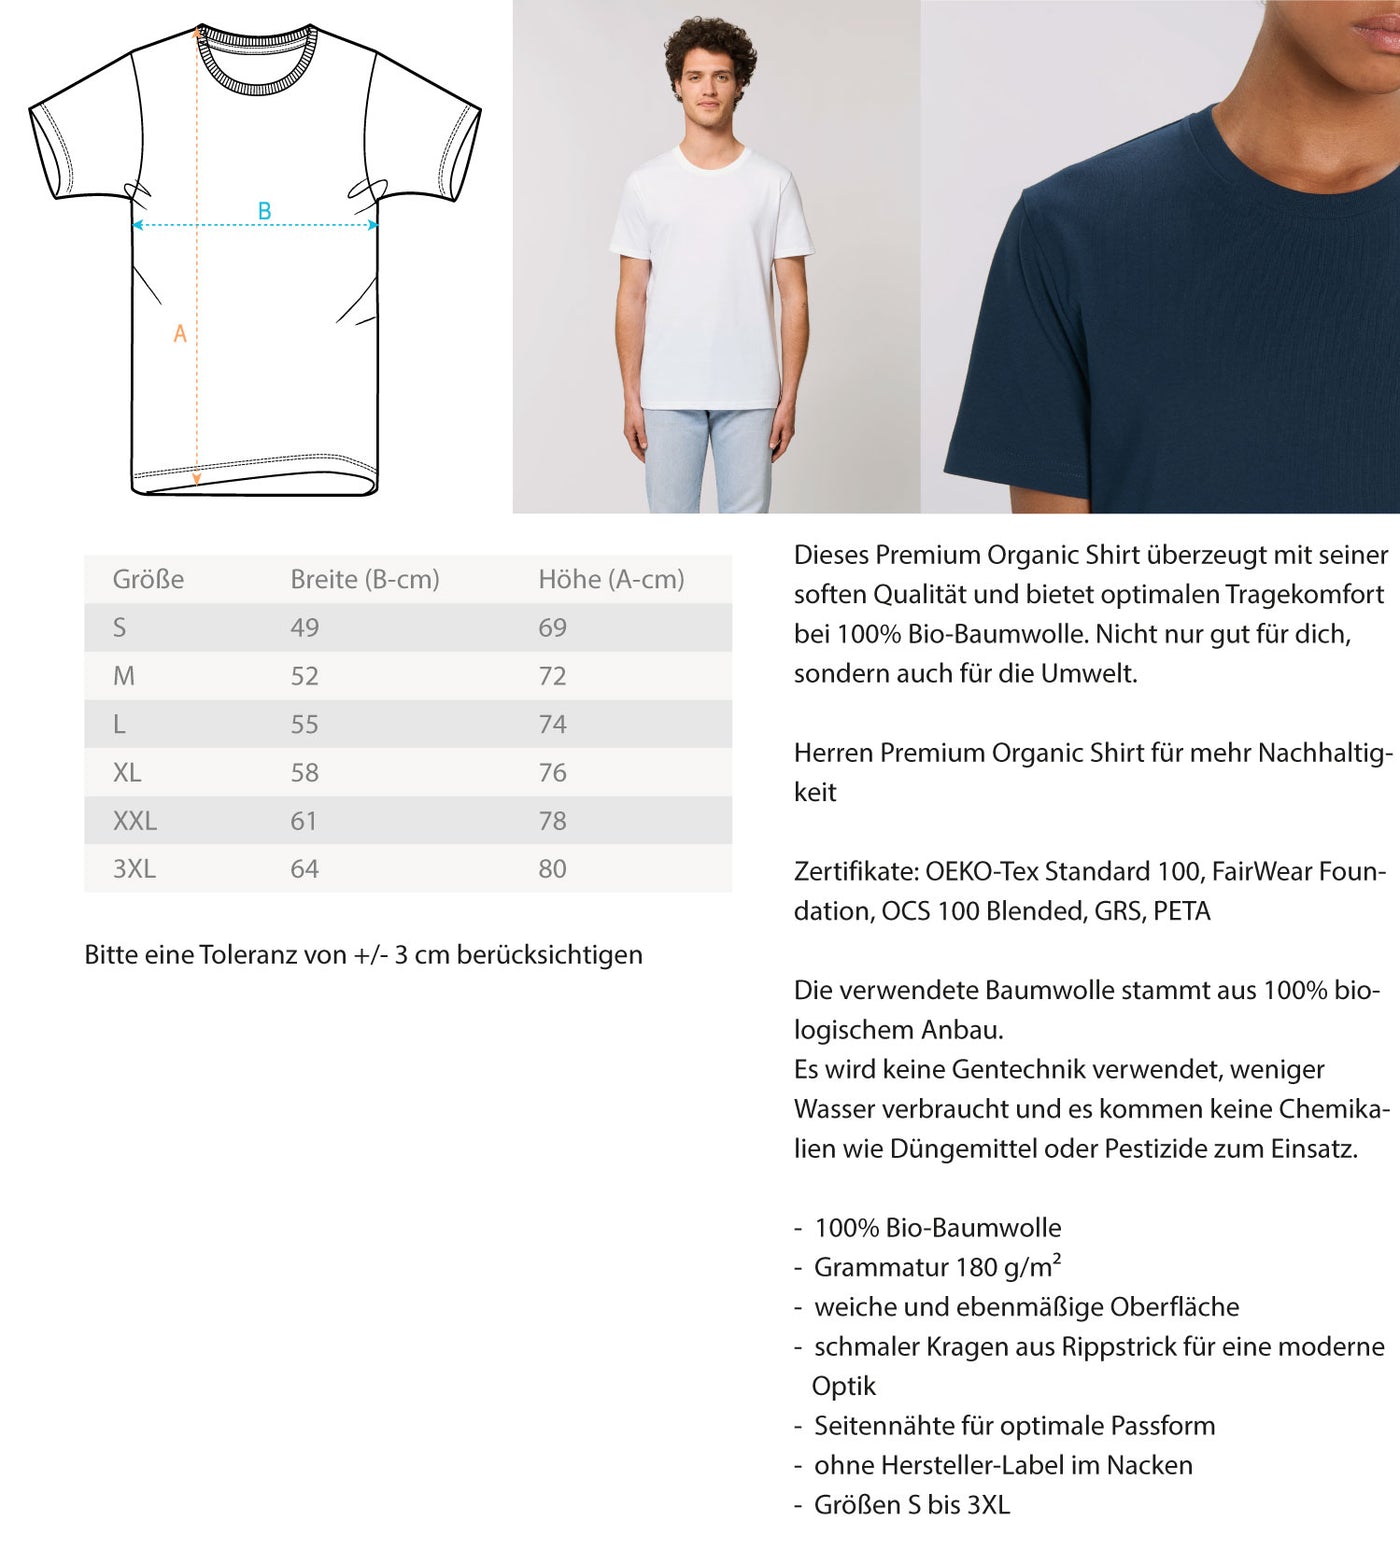 Hirsch Abstrakt - Herren Premium Organic T-Shirt camping wandern